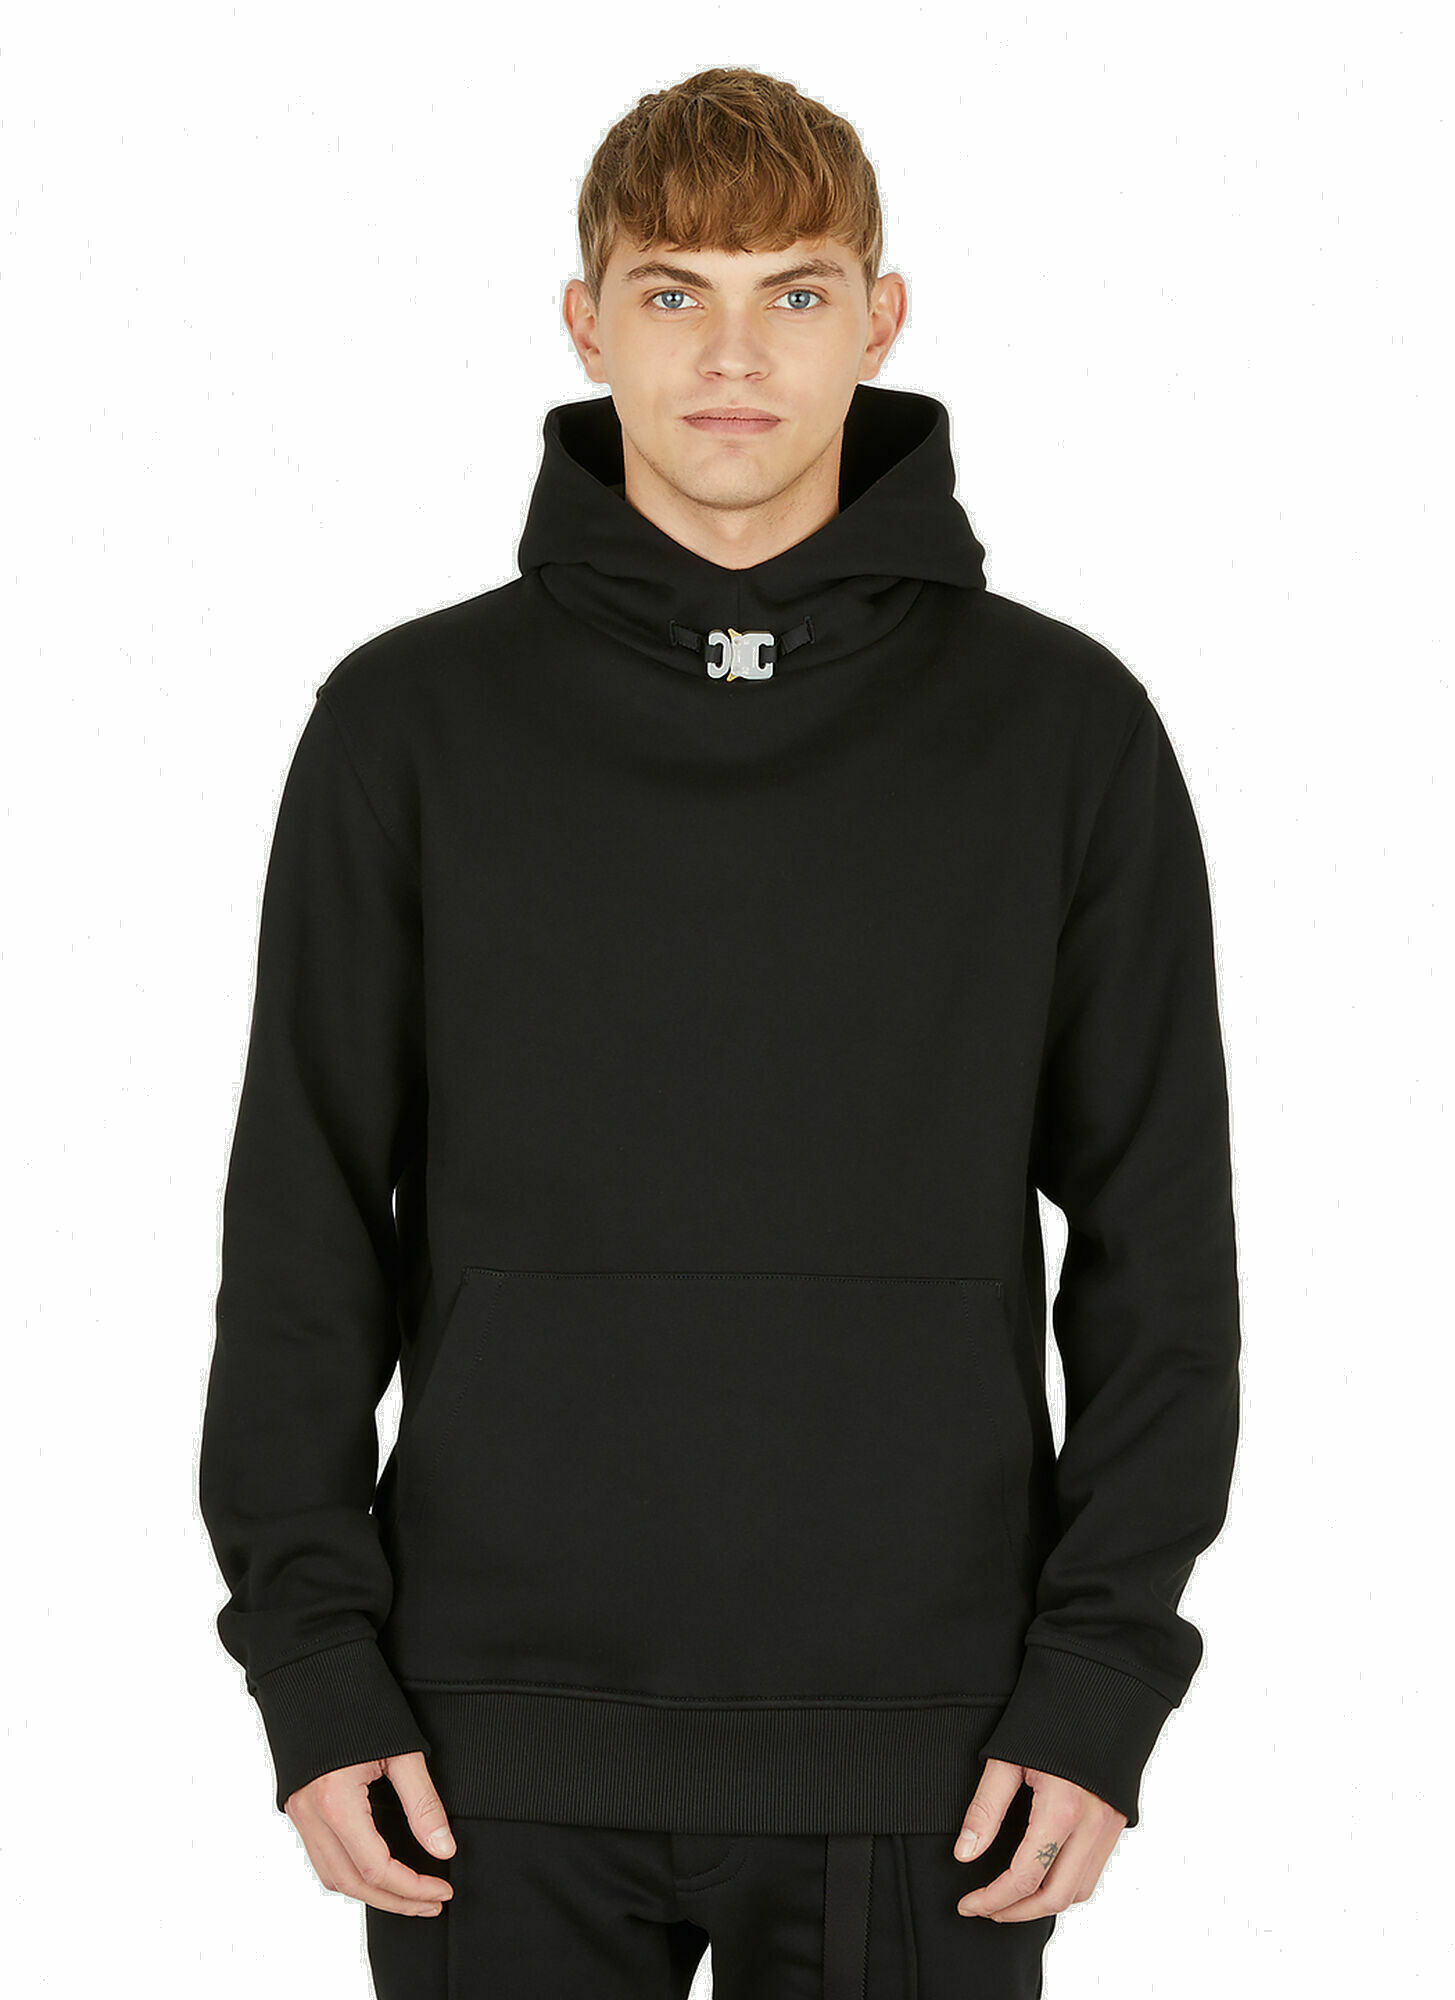 Photo: Buckle Hooded Sweatshirt in Black